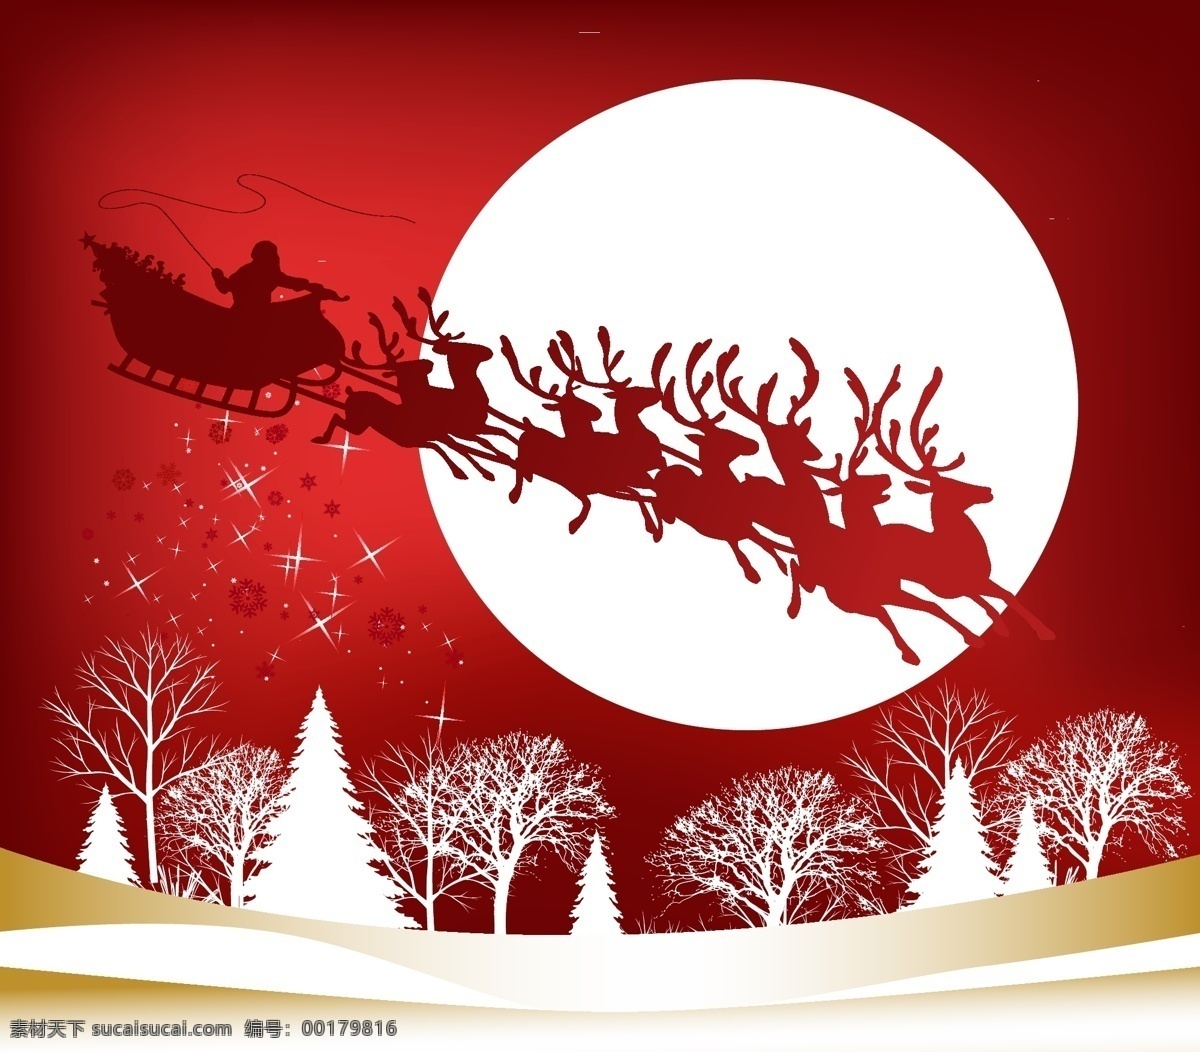 空中 飞过 圣诞老人 矢量 剪影 拉车 麋鹿 圣诞节 圣诞帽子 矢量素材 树木 雪花 雪景 雪橇 雪人 月亮 肥牛牛 矢量图 其他矢量图